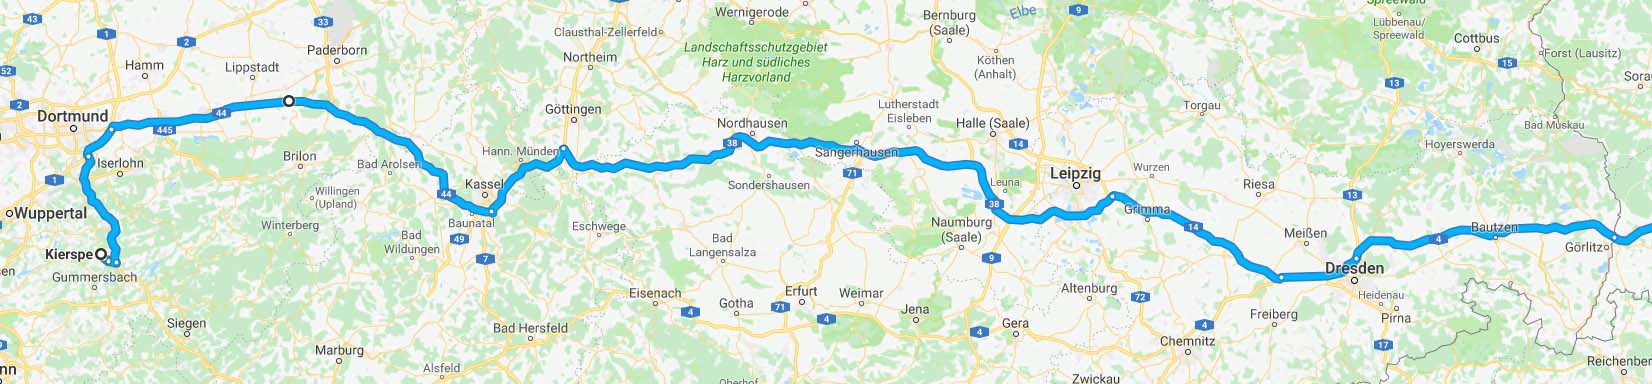 Streckenverlauf in Deutschland. 